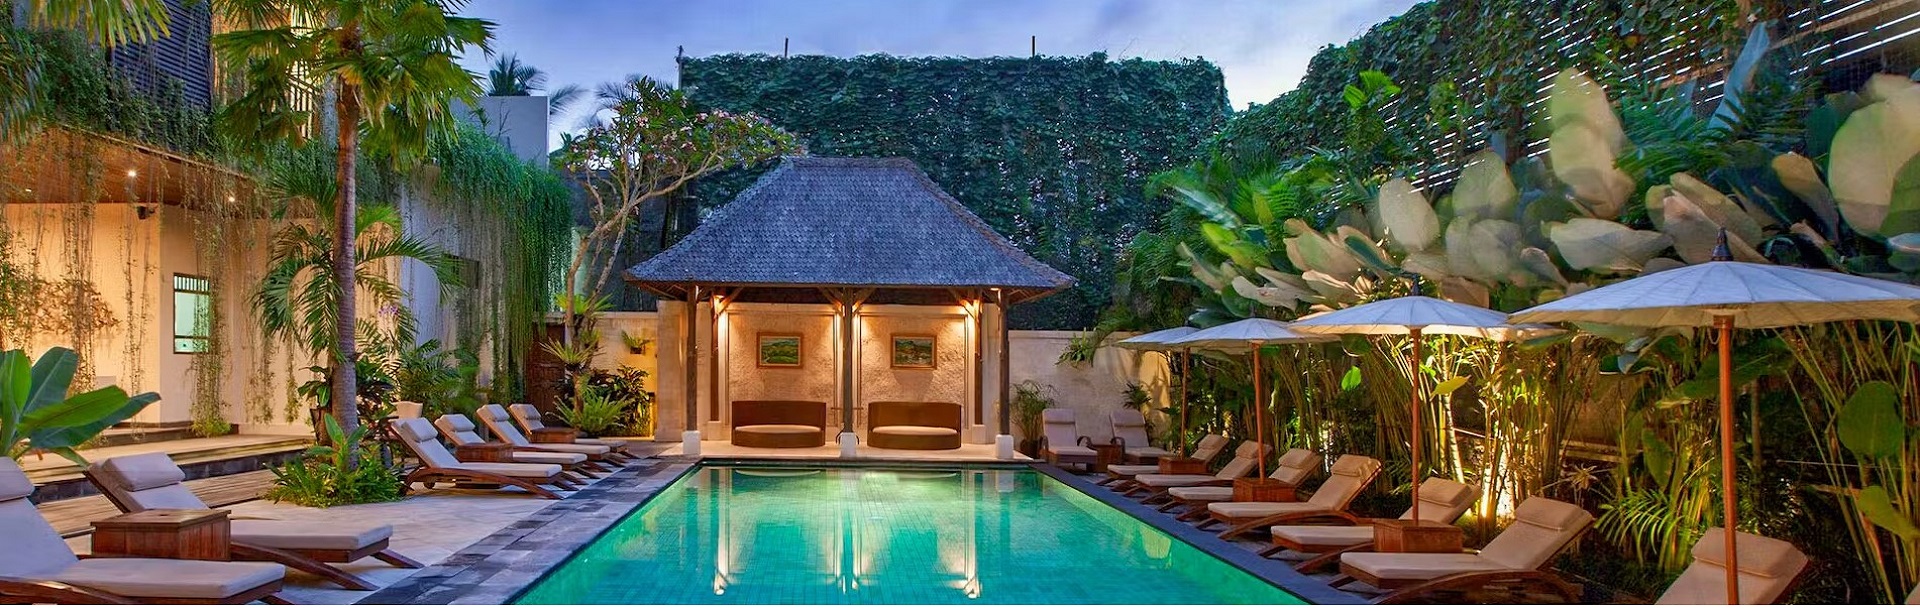 The Ubud Village Hotel, Bali